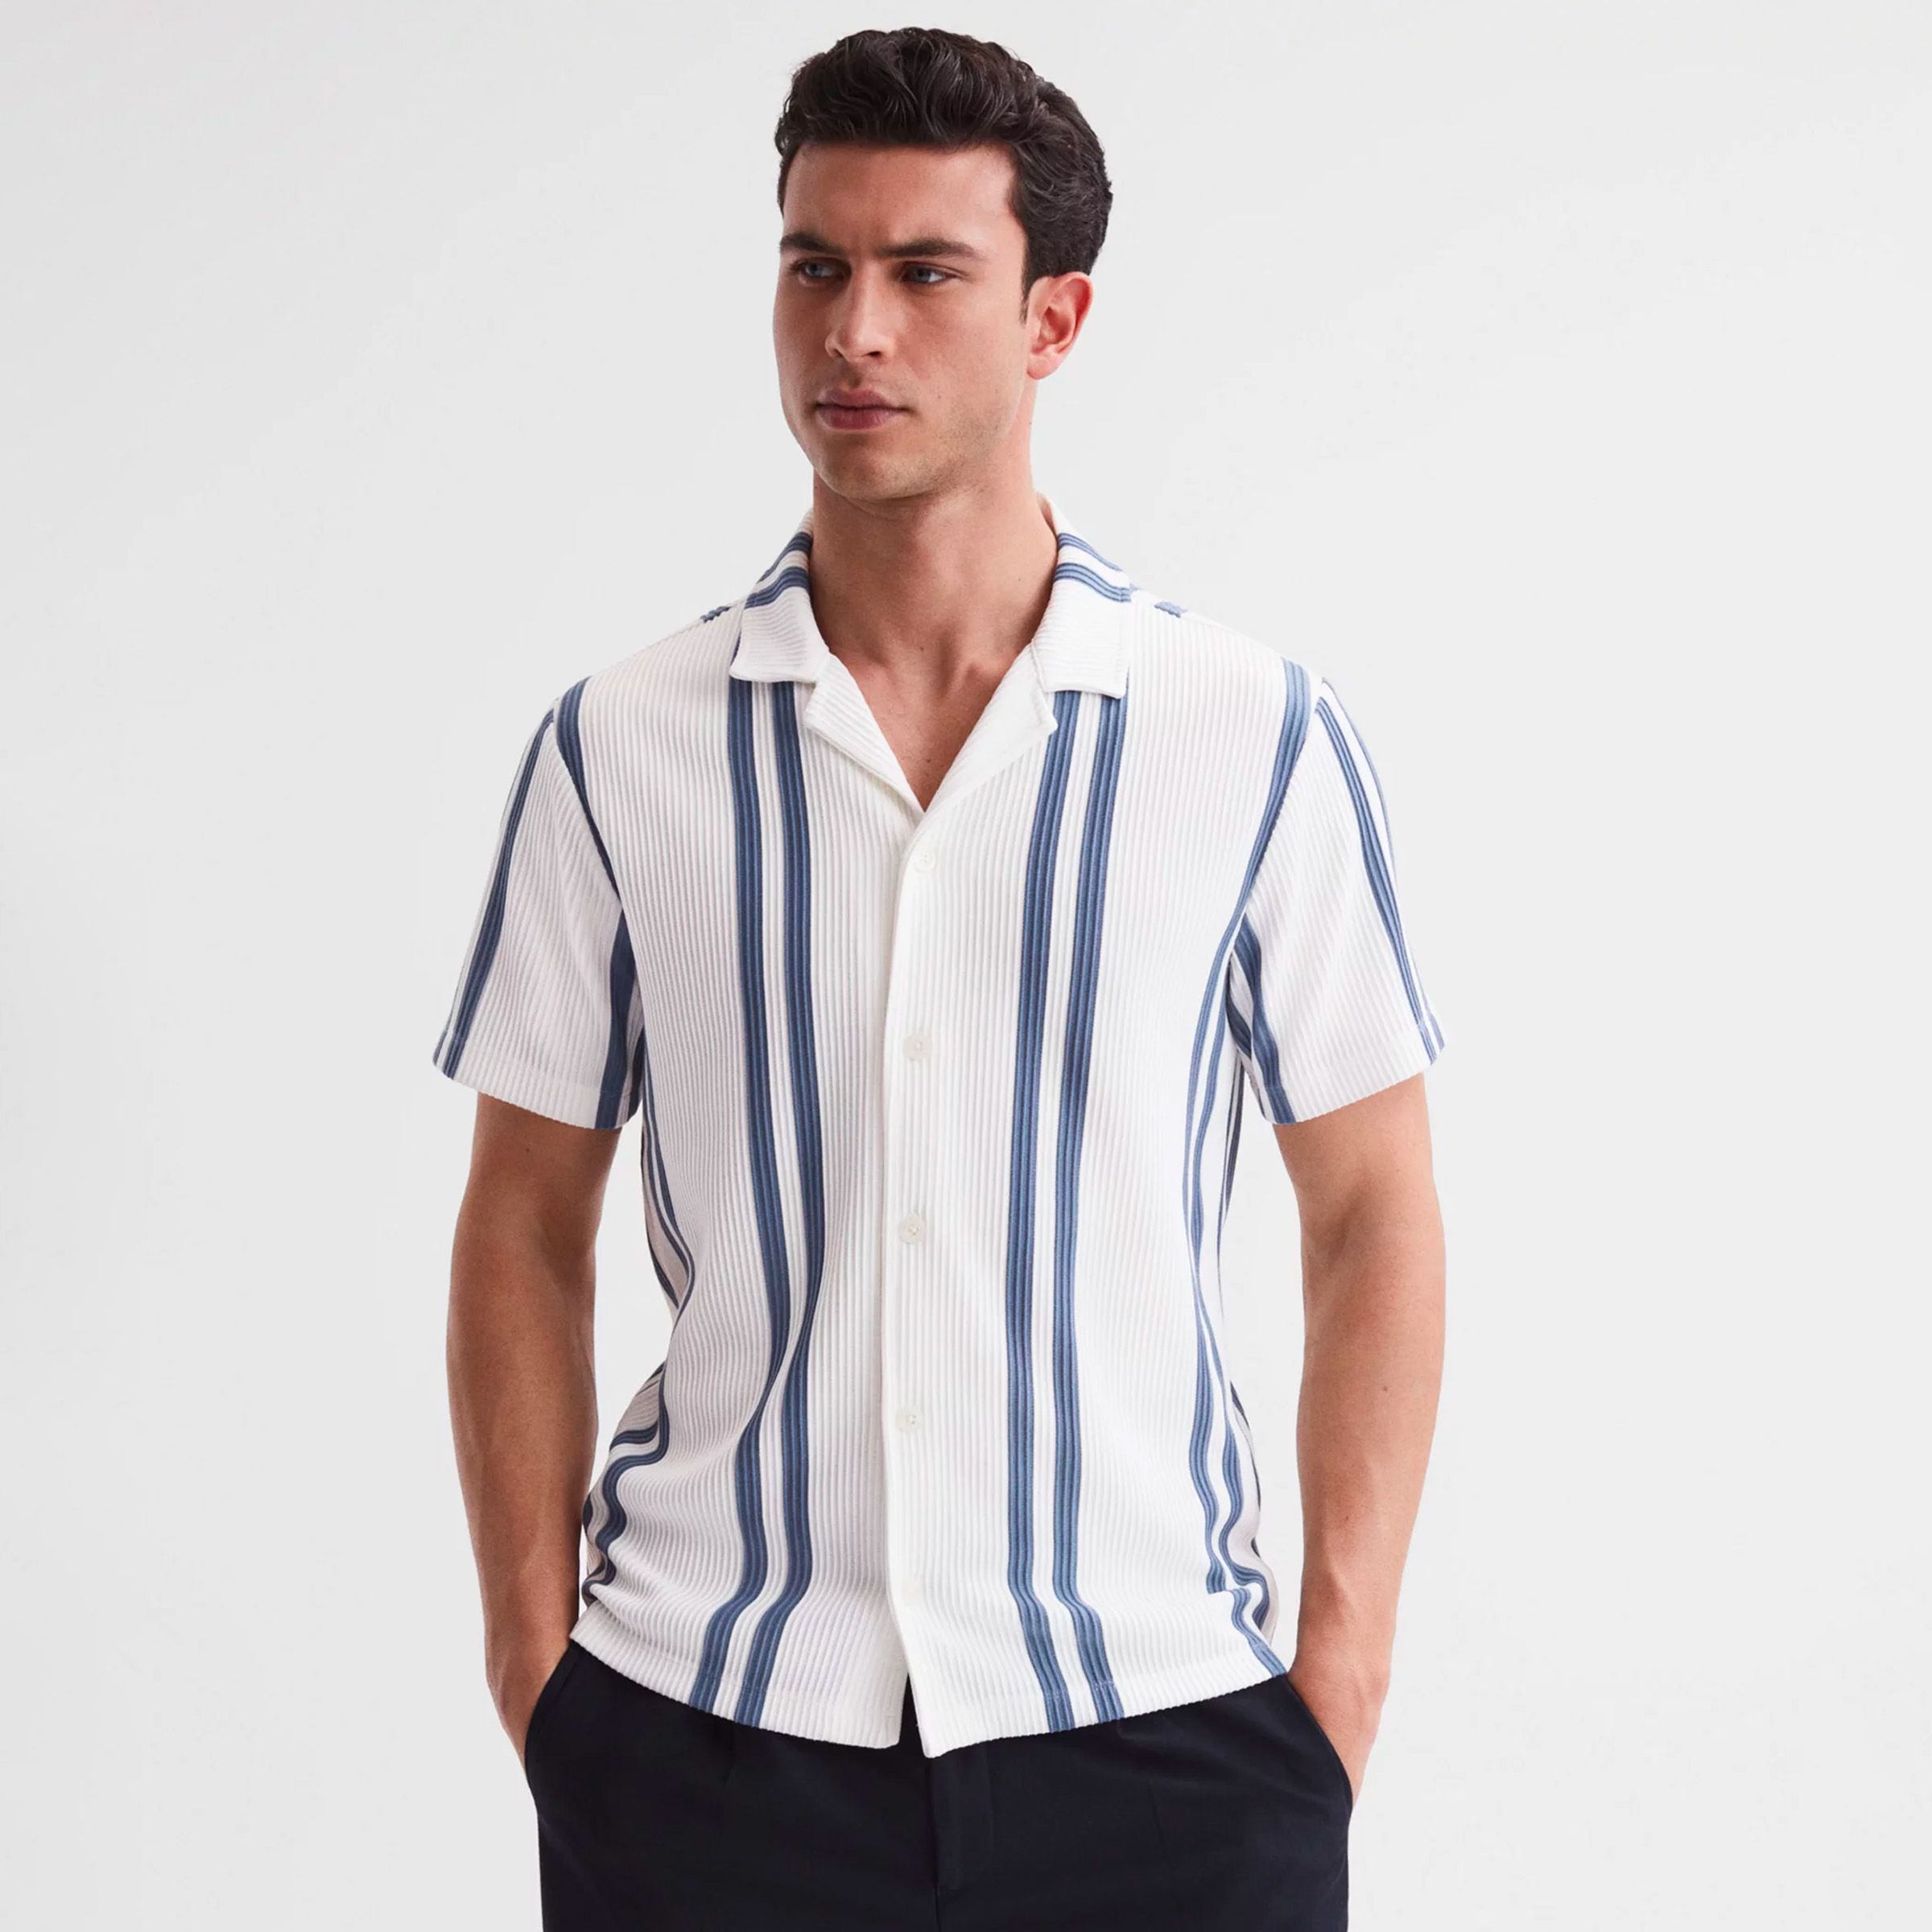 Men's Shirts | Casual, Formal & Designer Shirts | John Lewis